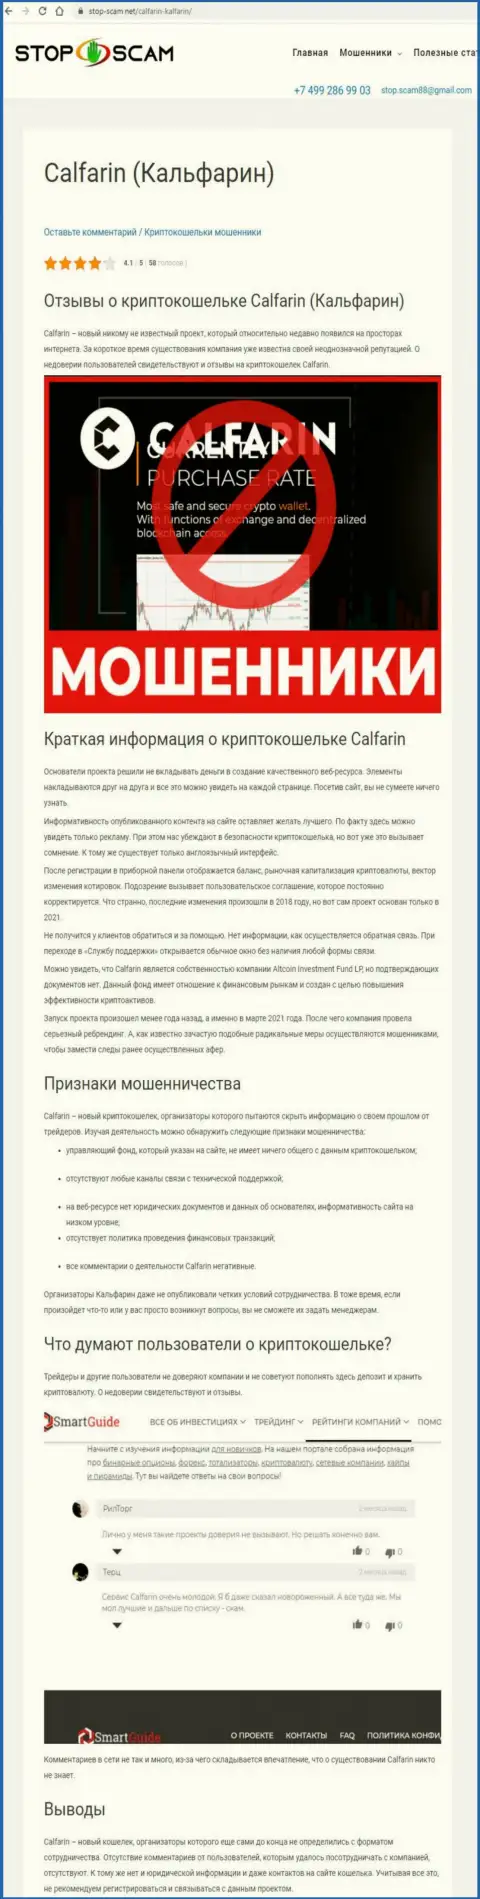 Calfarin это МОШЕННИКИ !!! Вложенные вами финансовые средства в опасности кражи - обзор